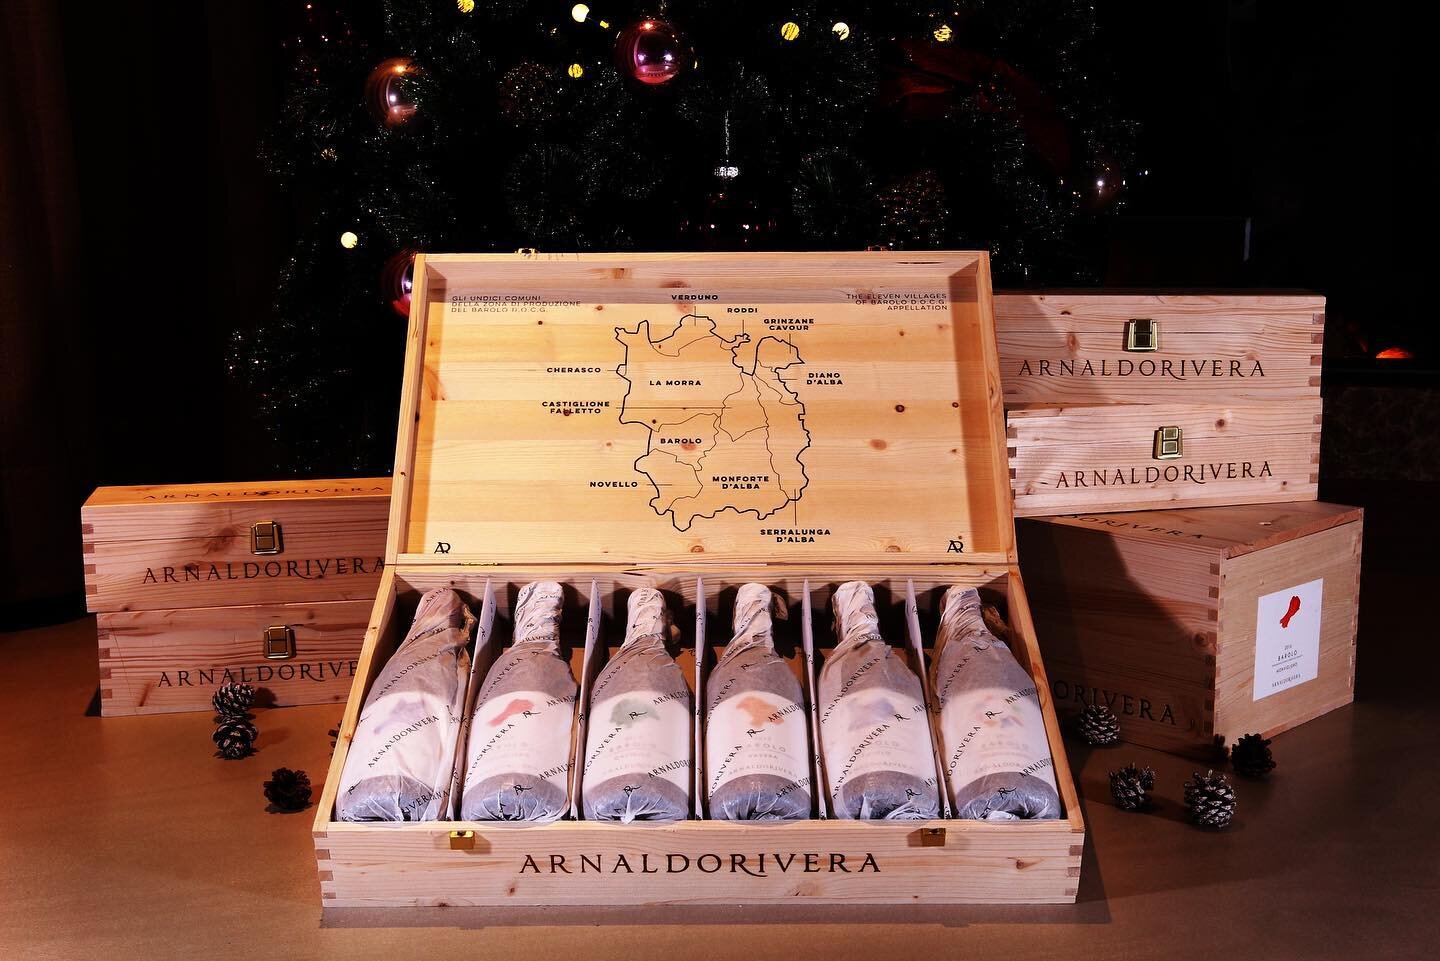 // 聖誕跨年活動開跑 //
聖誕節誇年最佳送禮首選，Buzzed Wine維焄葡萄酒禮盒組，2021的最後一個月，讓我們一起陪您倒數 ❤️🔥❤️🔥❤️🔥想了解酒單可以私訊或在下方留言+1唷！
-
▫️活動時間：12/1-12/30
▪️活動內容：Arnaldo Rivera酒莊Barolo MGA單瓶裝/六瓶裝禮盒組「 一律9折 + 免運費 」
▫️AR酒莊介紹: 開始於2013年份，AR葡萄酒是酒莊與其中幾個成員間官方協議的成果，協議約束：
🇮🇹平均面積不超過0.5公頃的小片葡萄田